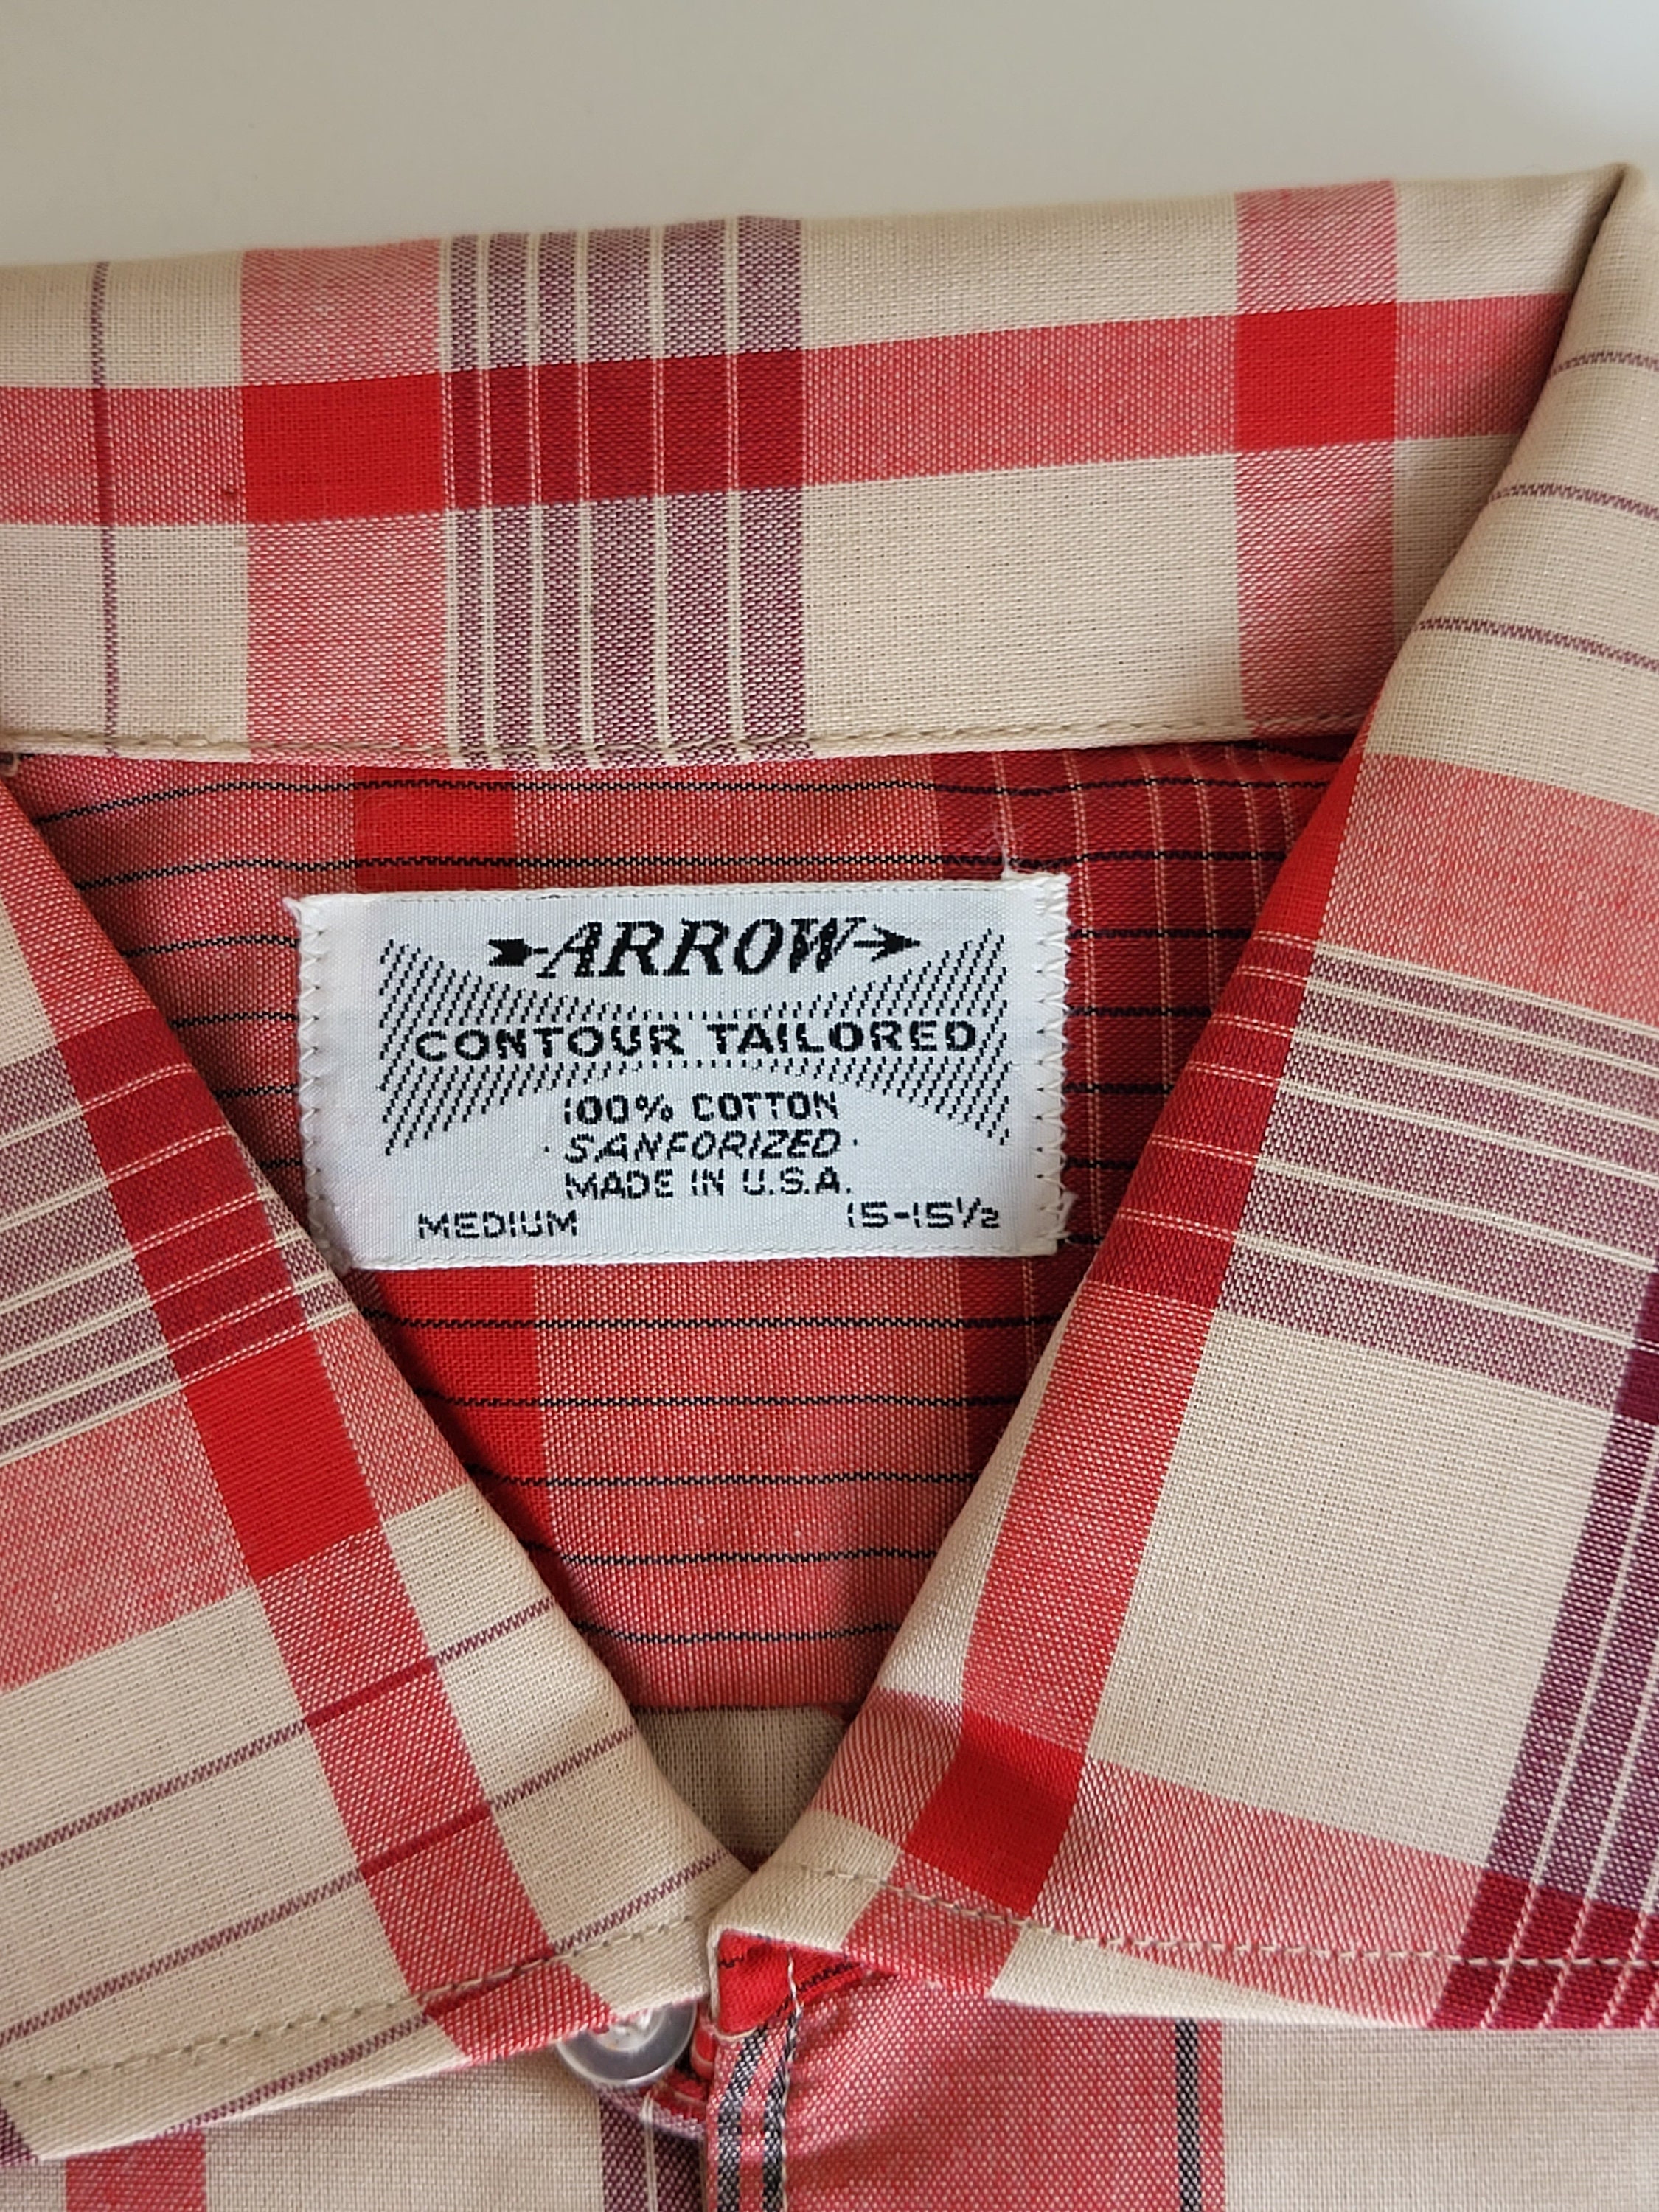 Vintage Arrow Contour Tailored Red & Tan Plaid Shirt M/15 15 1/2